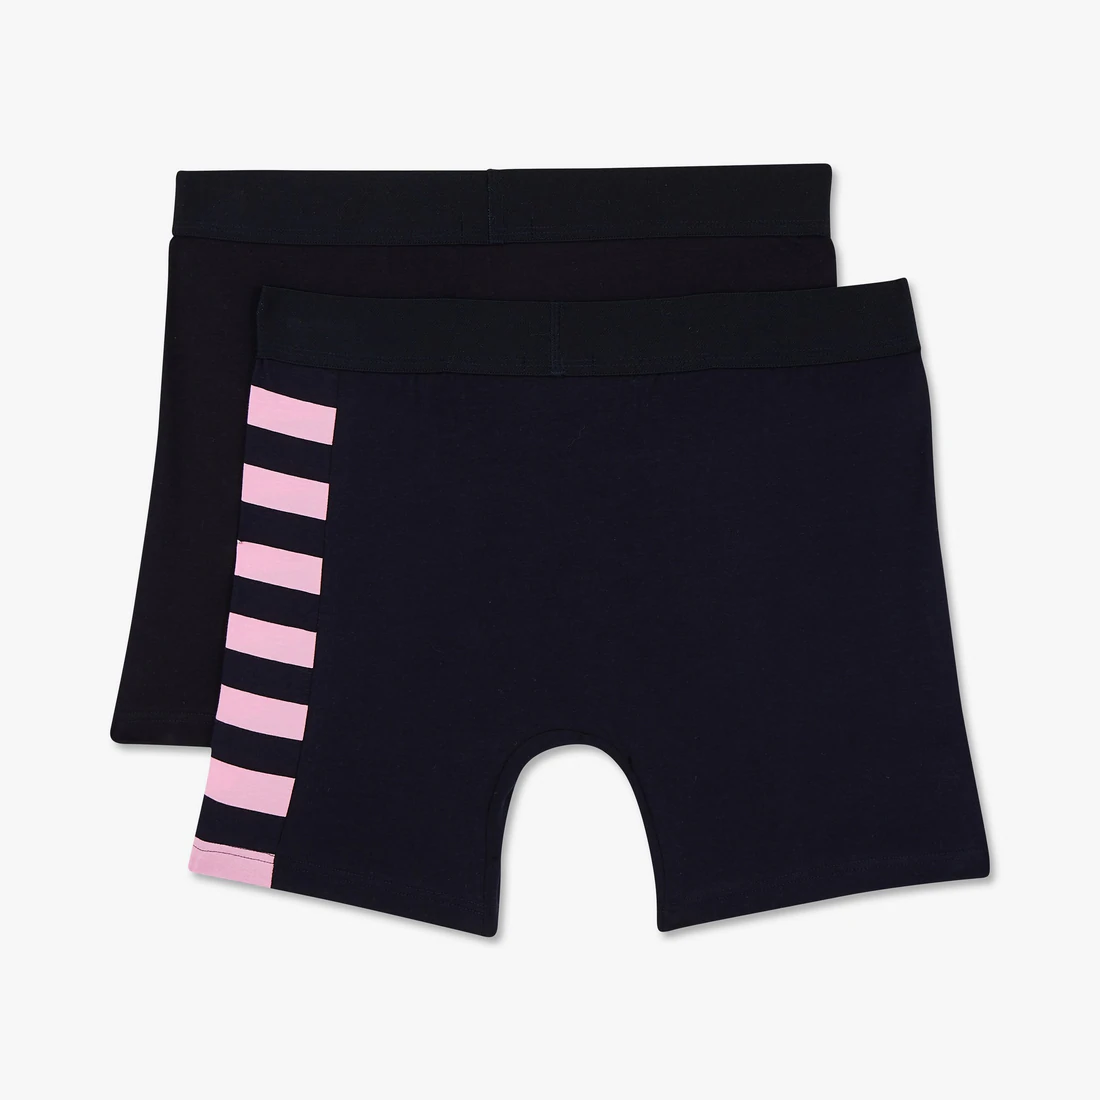 Eden Park Pink Stripe Underwear